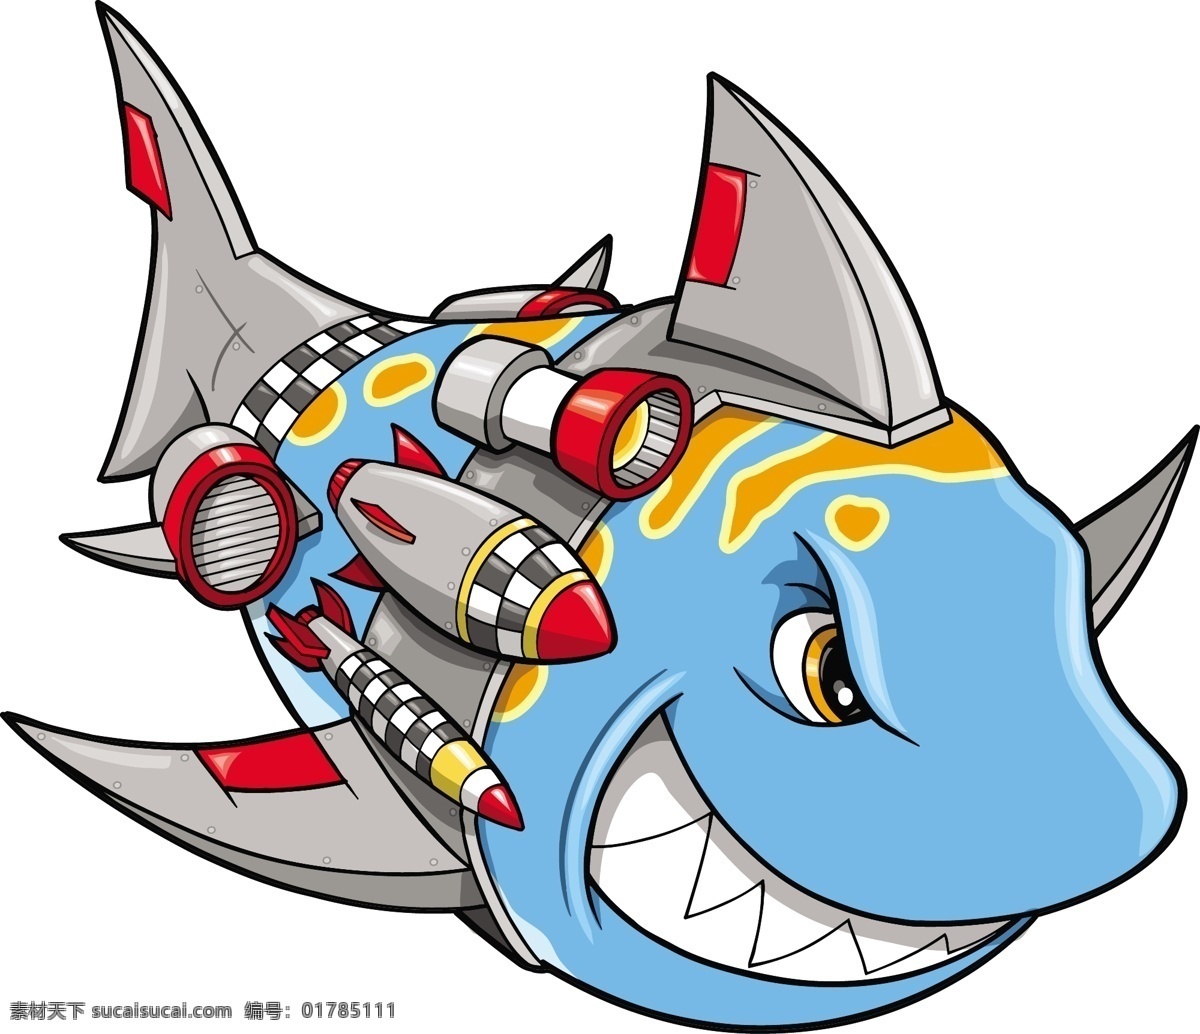 鲨鱼 卡通鲨鱼 鲨鱼设计 鲨鱼图标 海底鲨鱼 海洋生物 生物世界